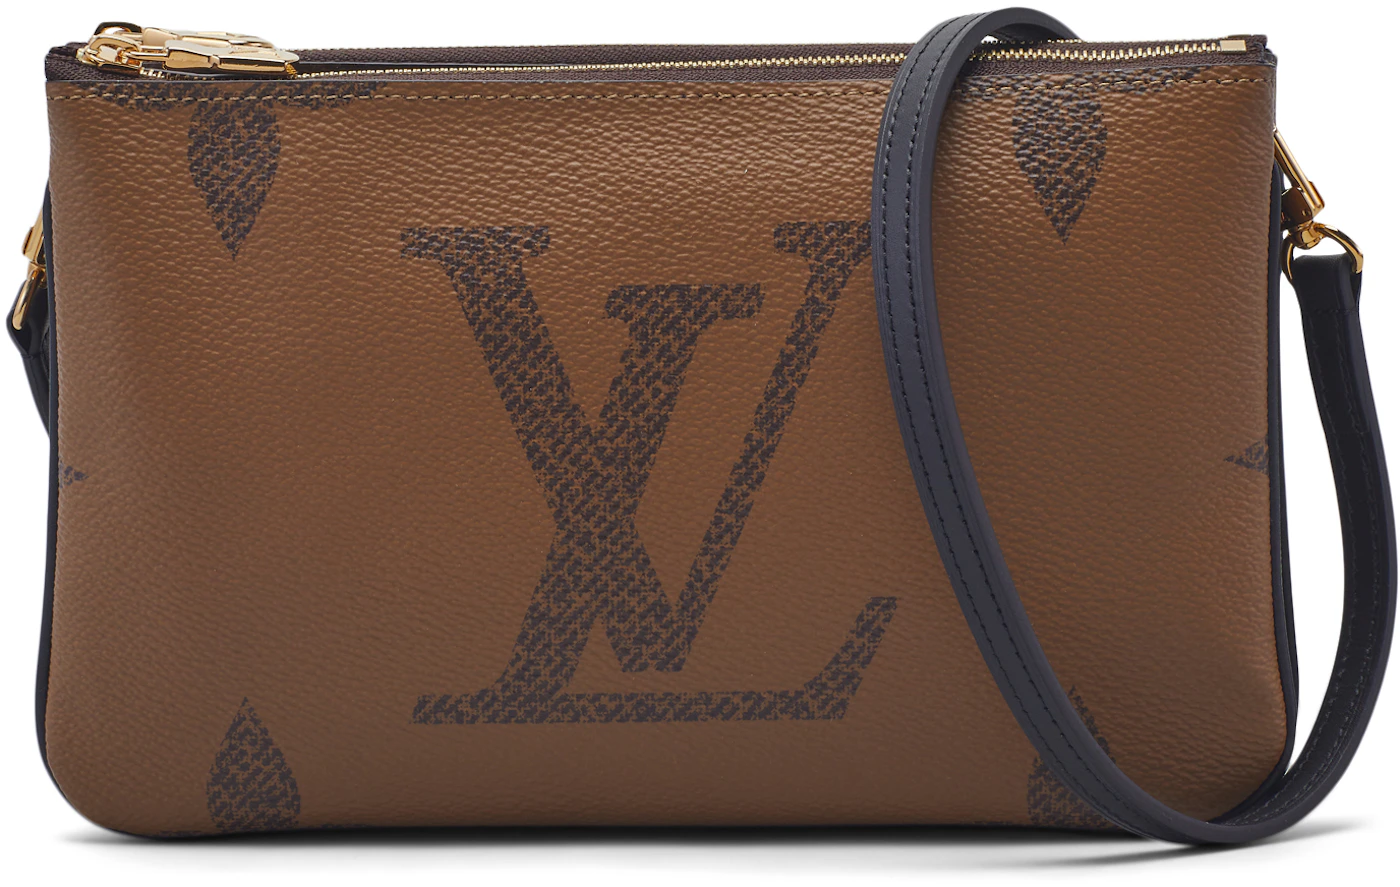 Louis Vuitton Monogram Double Zip Pochette - Ann's Fabulous Closeouts